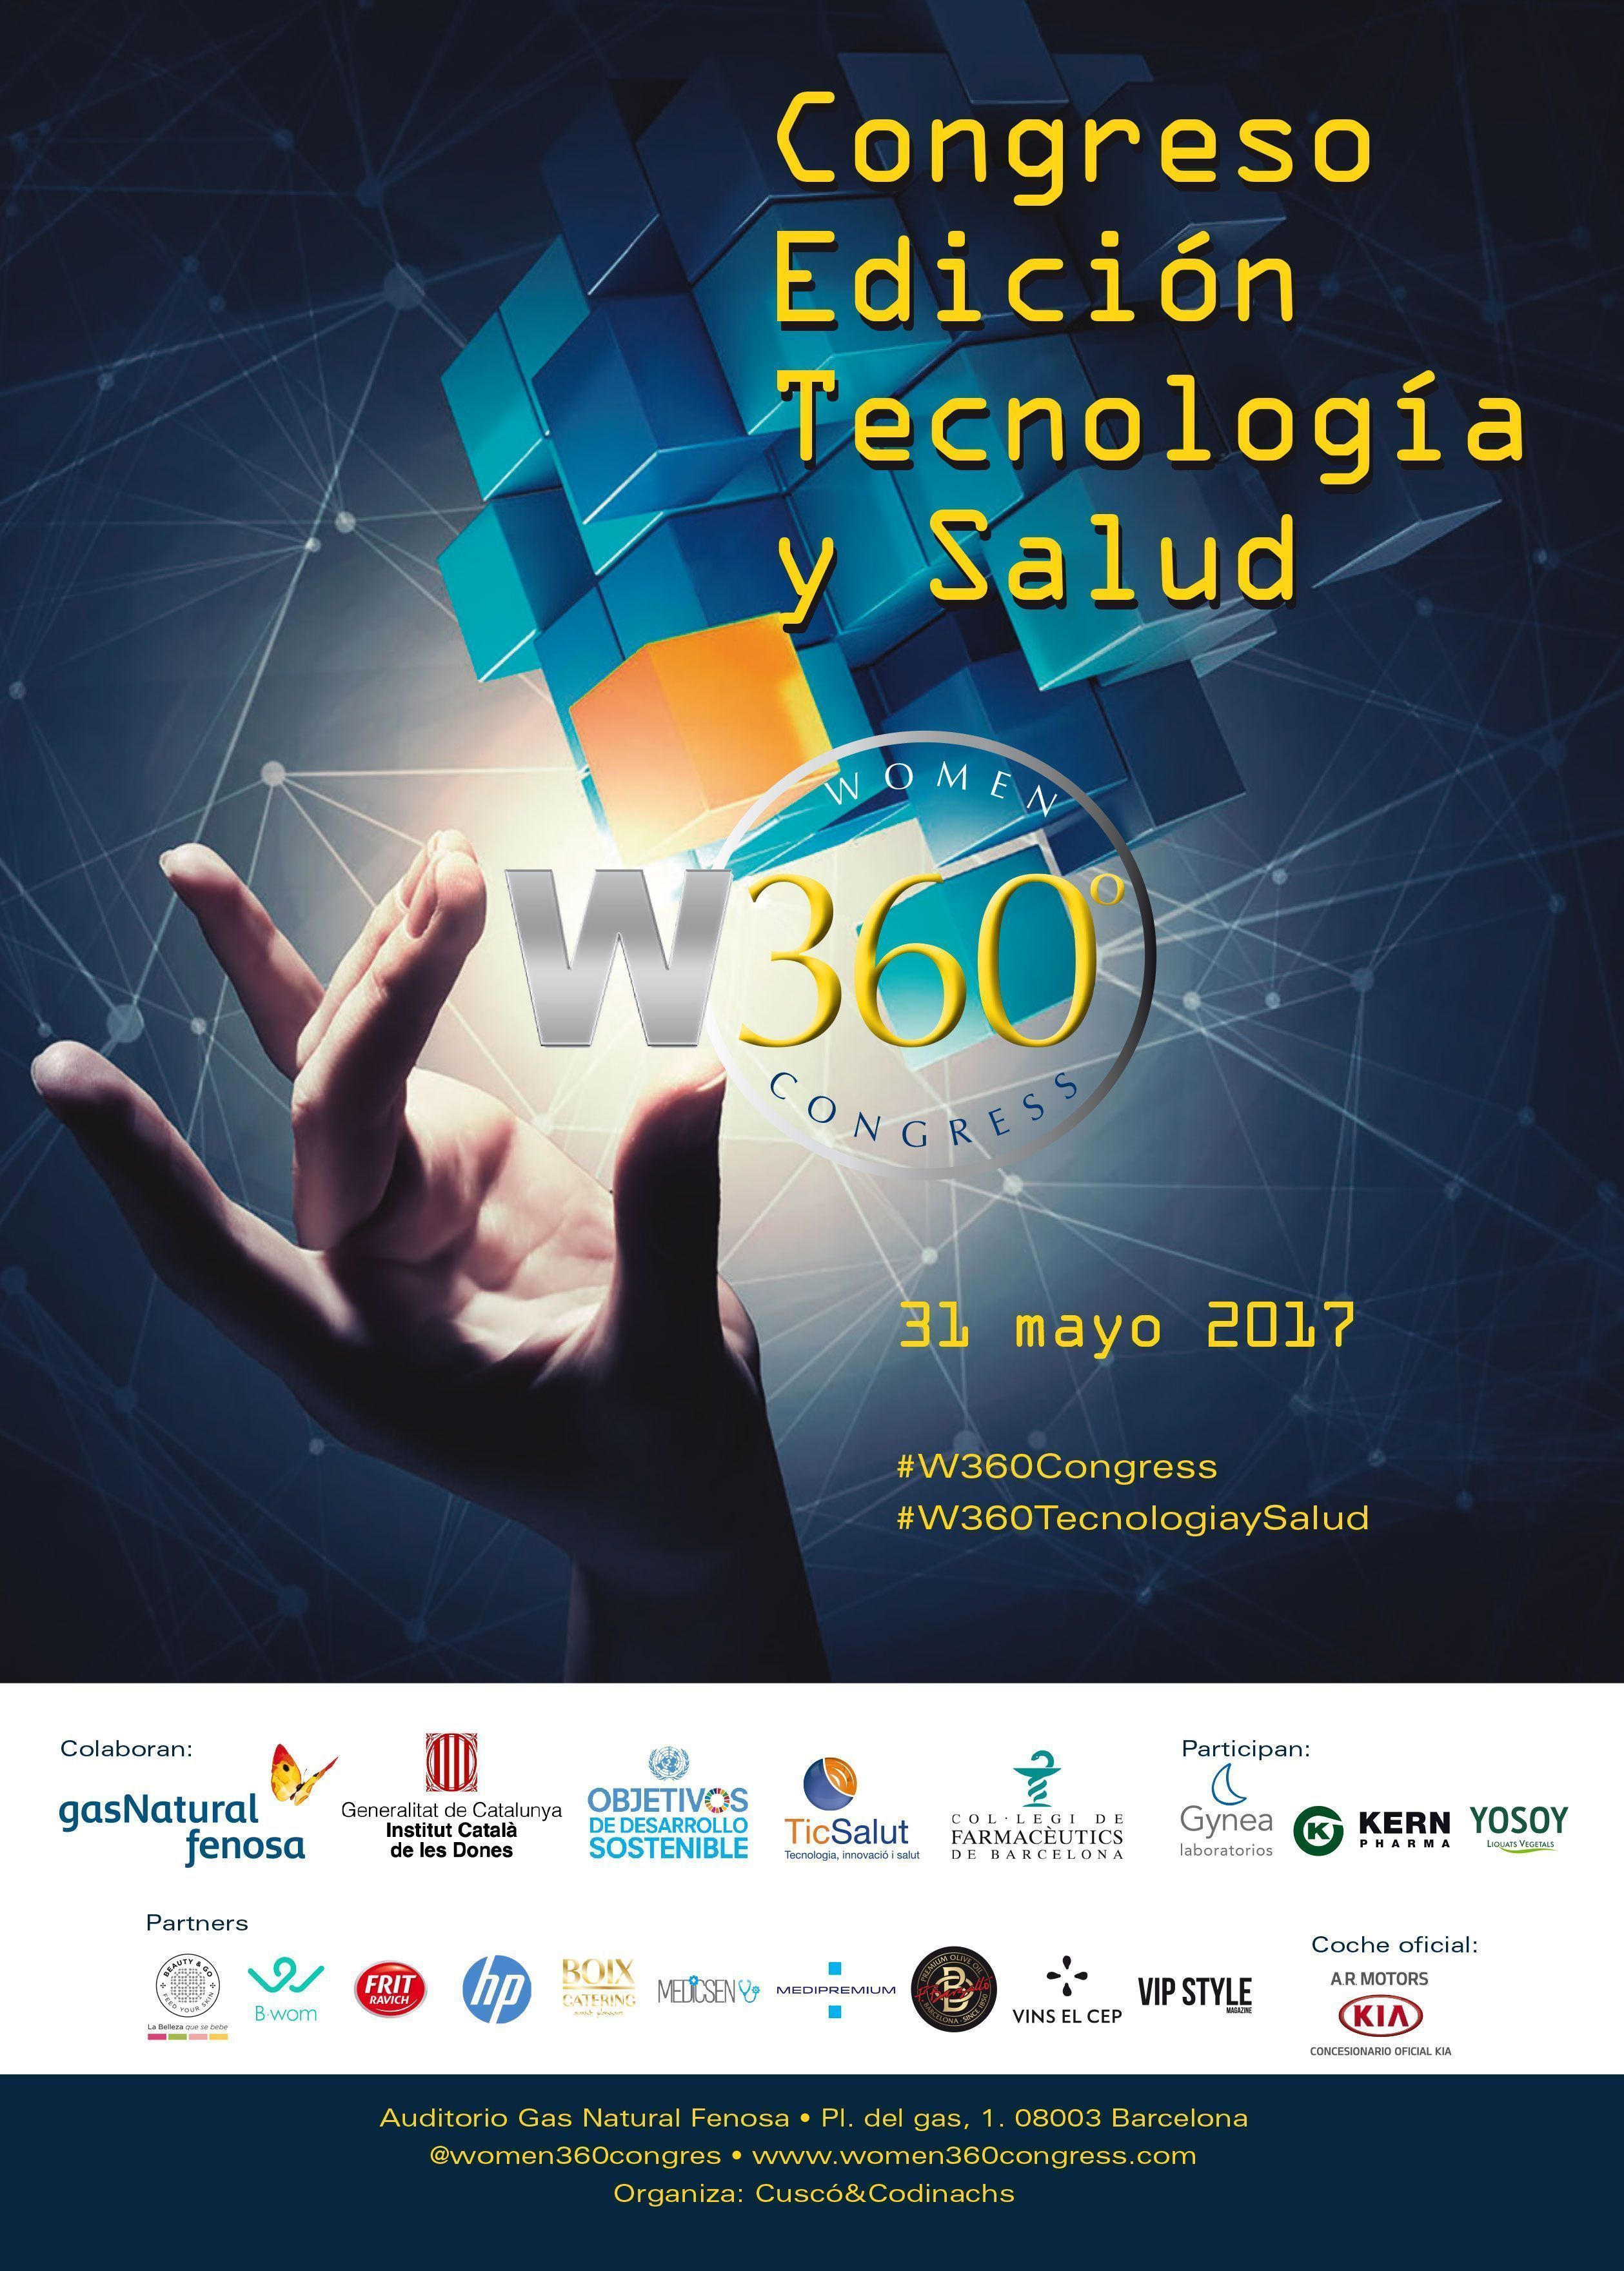 Tecnologia y salud es el eje de la nueva edicion del Women 360 Congress